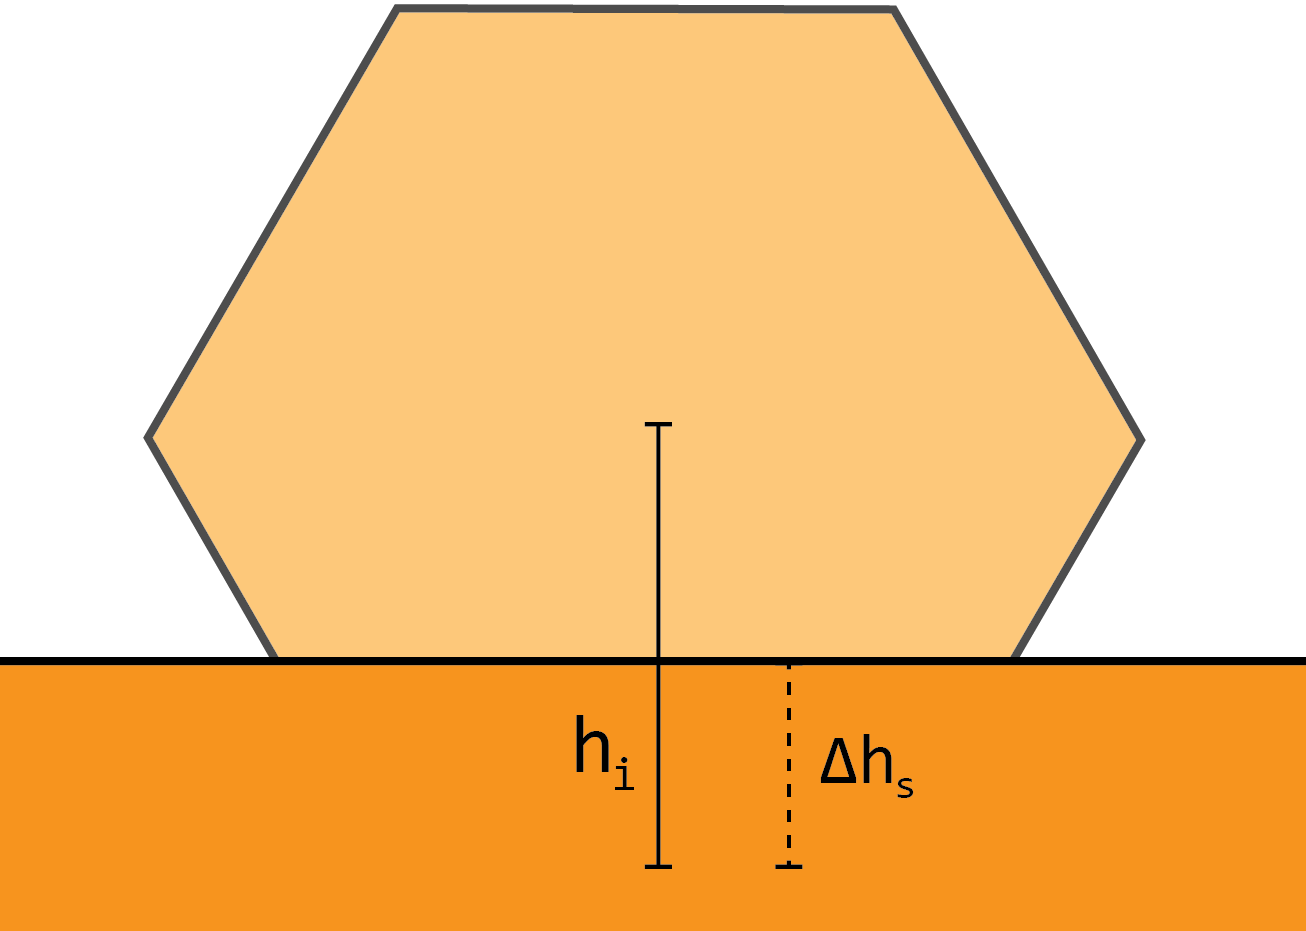 Forbi en viss størrelse danner partikkelen et avstumpet oktaeder (som har kubisk symmetri, og dermed kan danne en fcc-struktur internt).